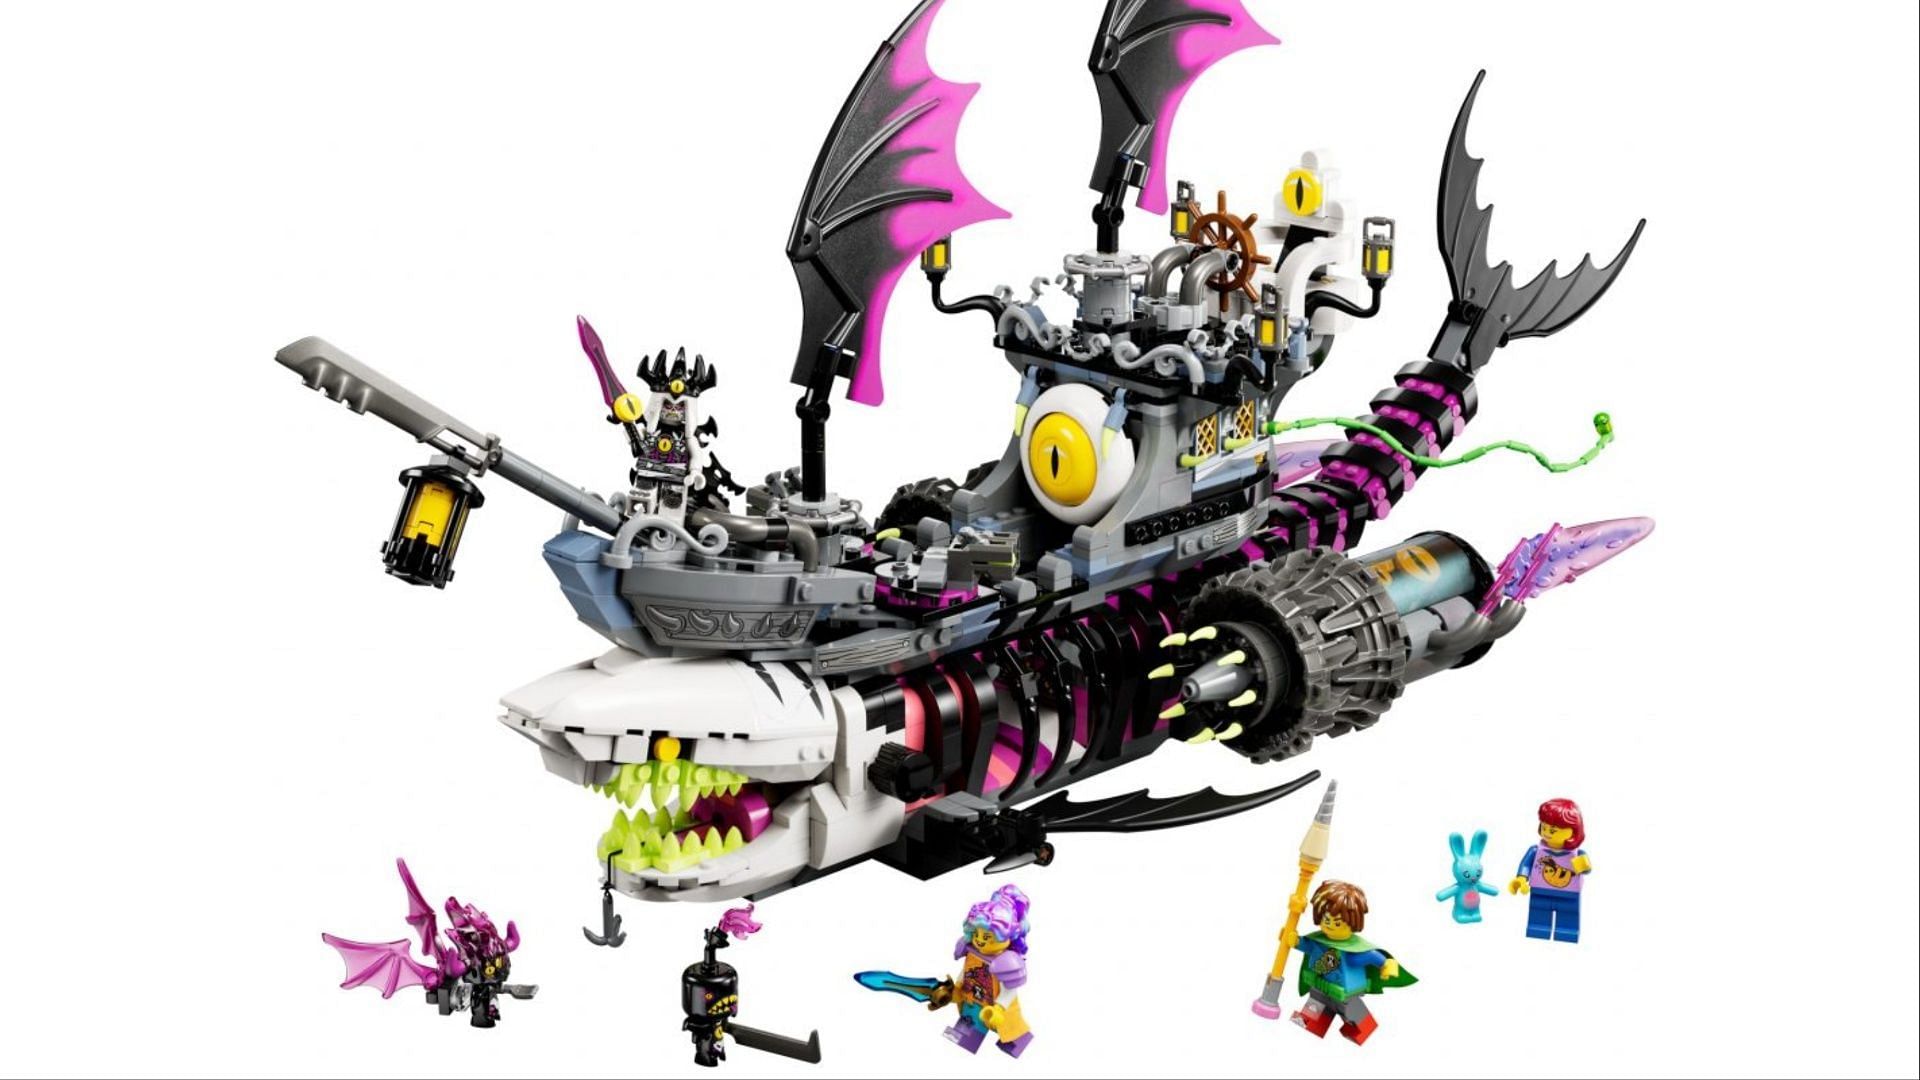 DREAMZzz Nightmare Shark Ship (Image via LEGO)